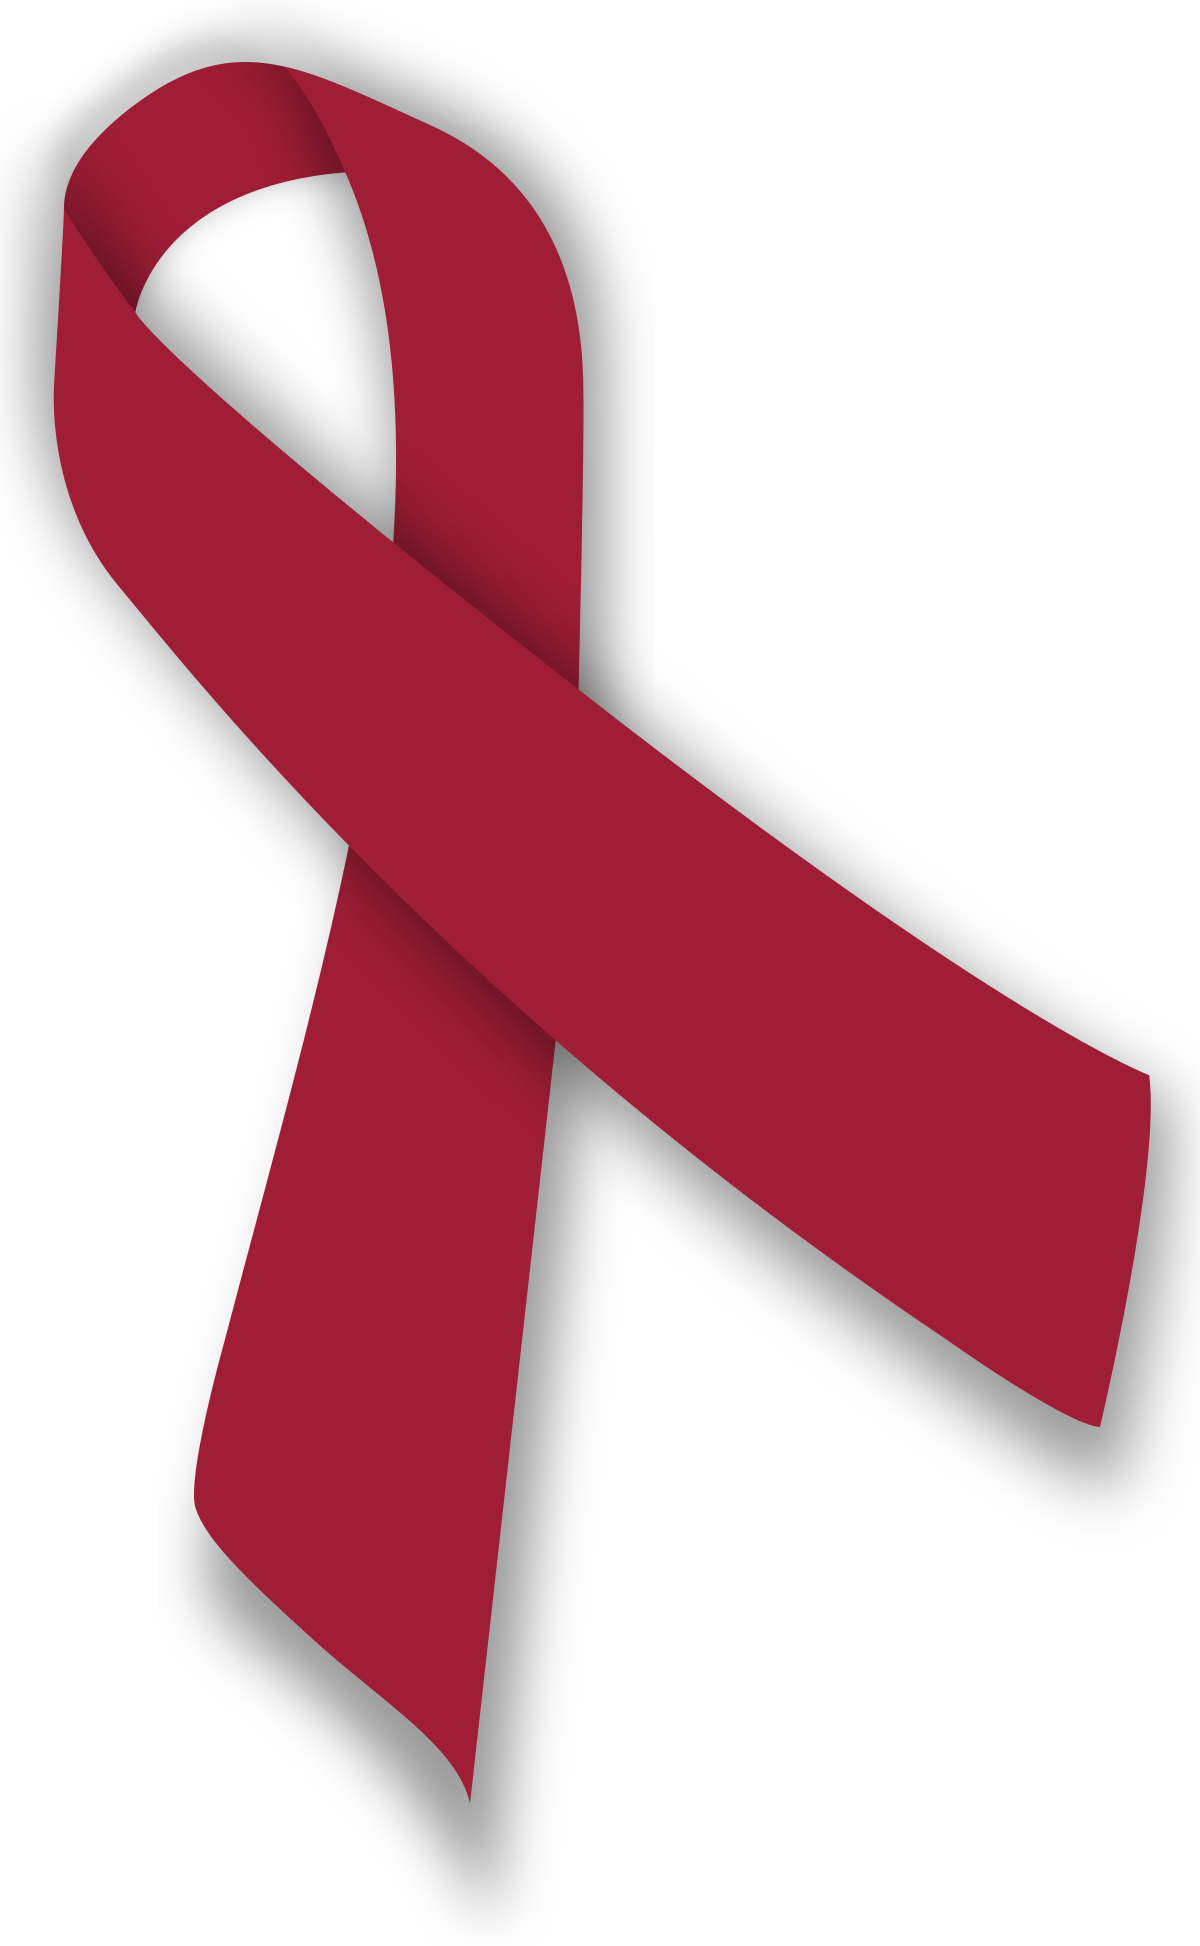 File:Burgundy ribbon.svg - Wikipedia